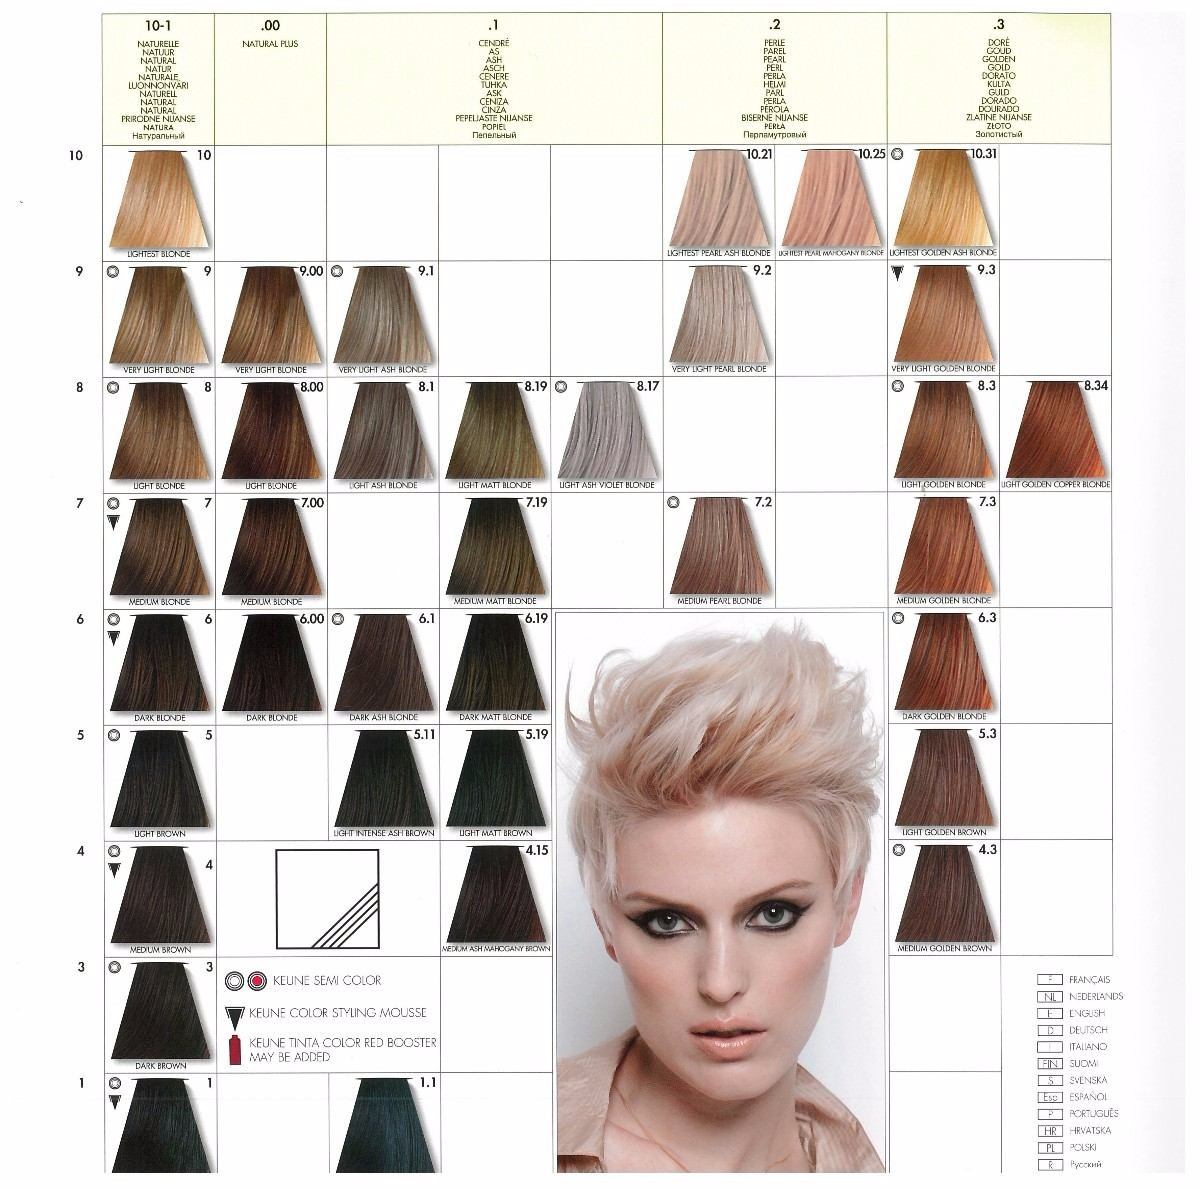 keune-hair-color-chart-1740-15-fresh-keune-color-chart-pics-keunehair-pin-em-art-keune-hair